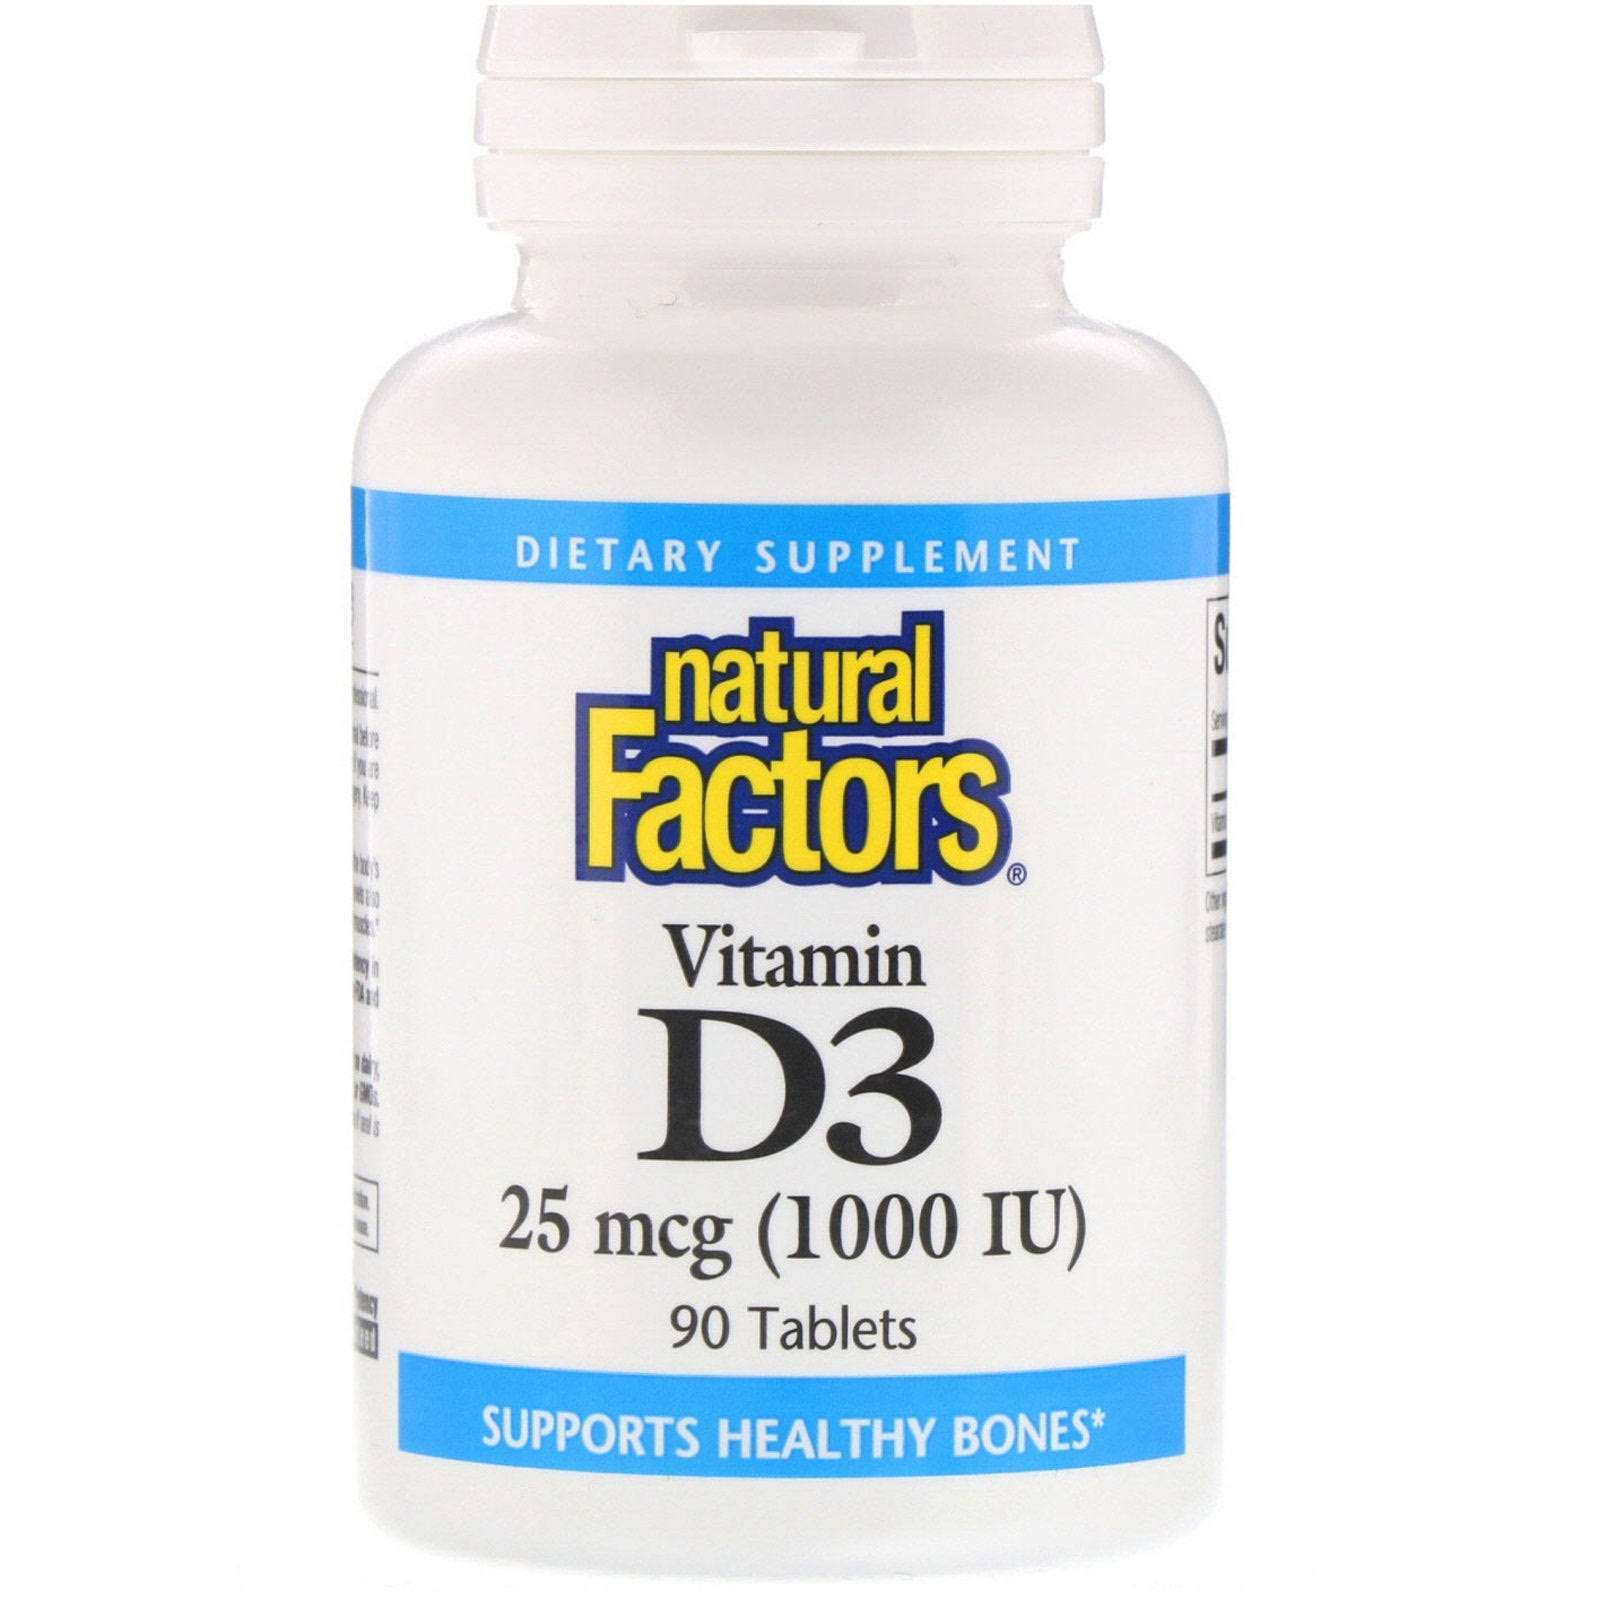 Natural Factors - Vitamin D3 1000 IU - 90 Tablets